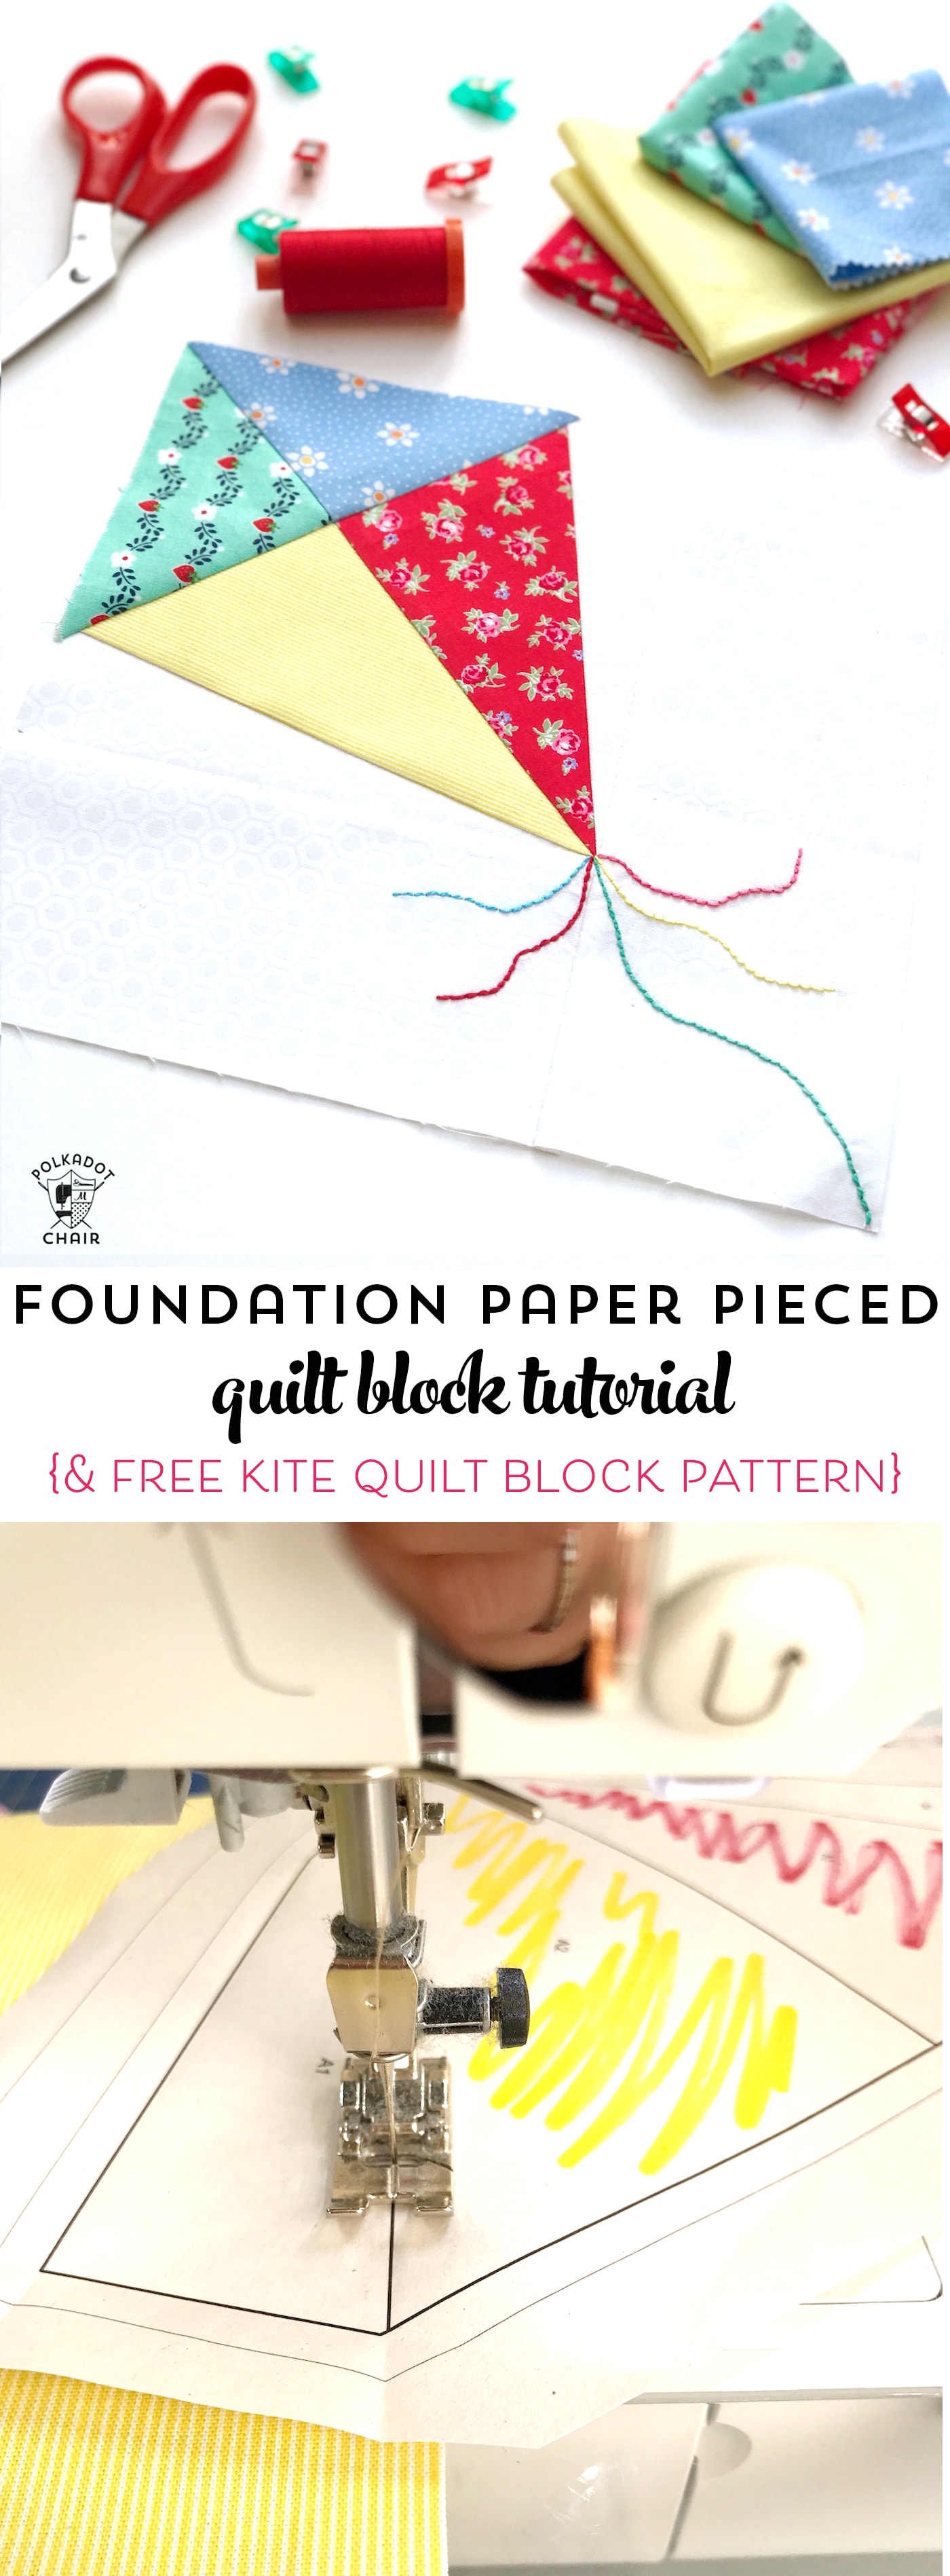 Apprenez à fabriquer du papier avec ce didacticiel d'assemblage de papier de base de Sarah Ashford sur polkadotchair.com. Comprend un modèle gratuit d'assemblage de papier cerf-volant #paperpiecing #foundationpaperpiecing #quilts #quiltblock #quiltpatterns